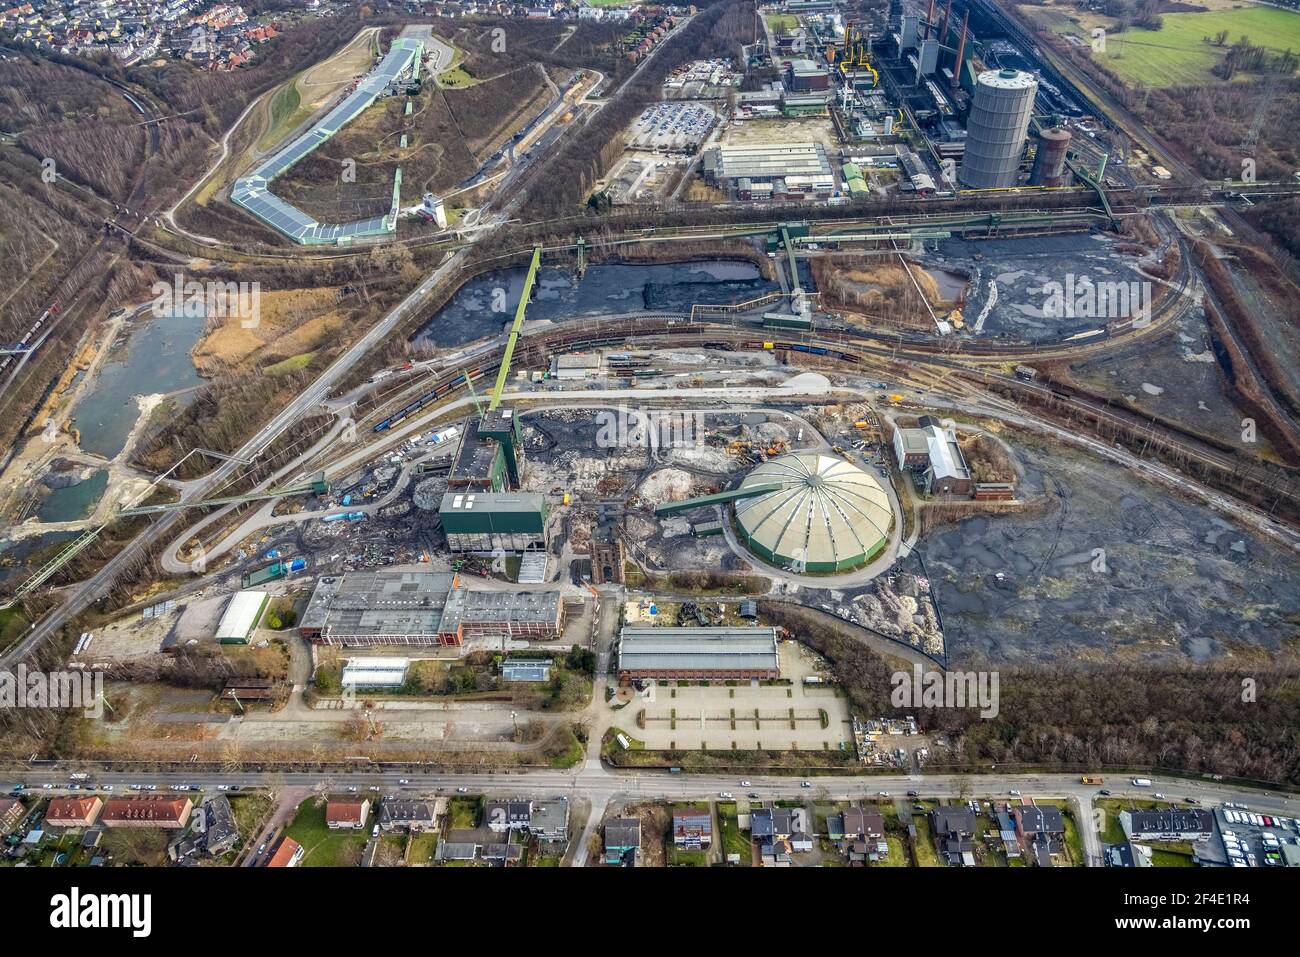 Vista aérea, obra de demolición de obra de la antigua mina Prosper-Haniel II, Bottrop, área de Ruhr, Renania del Norte-Westfalia, Alemania, demolición, Foto de stock